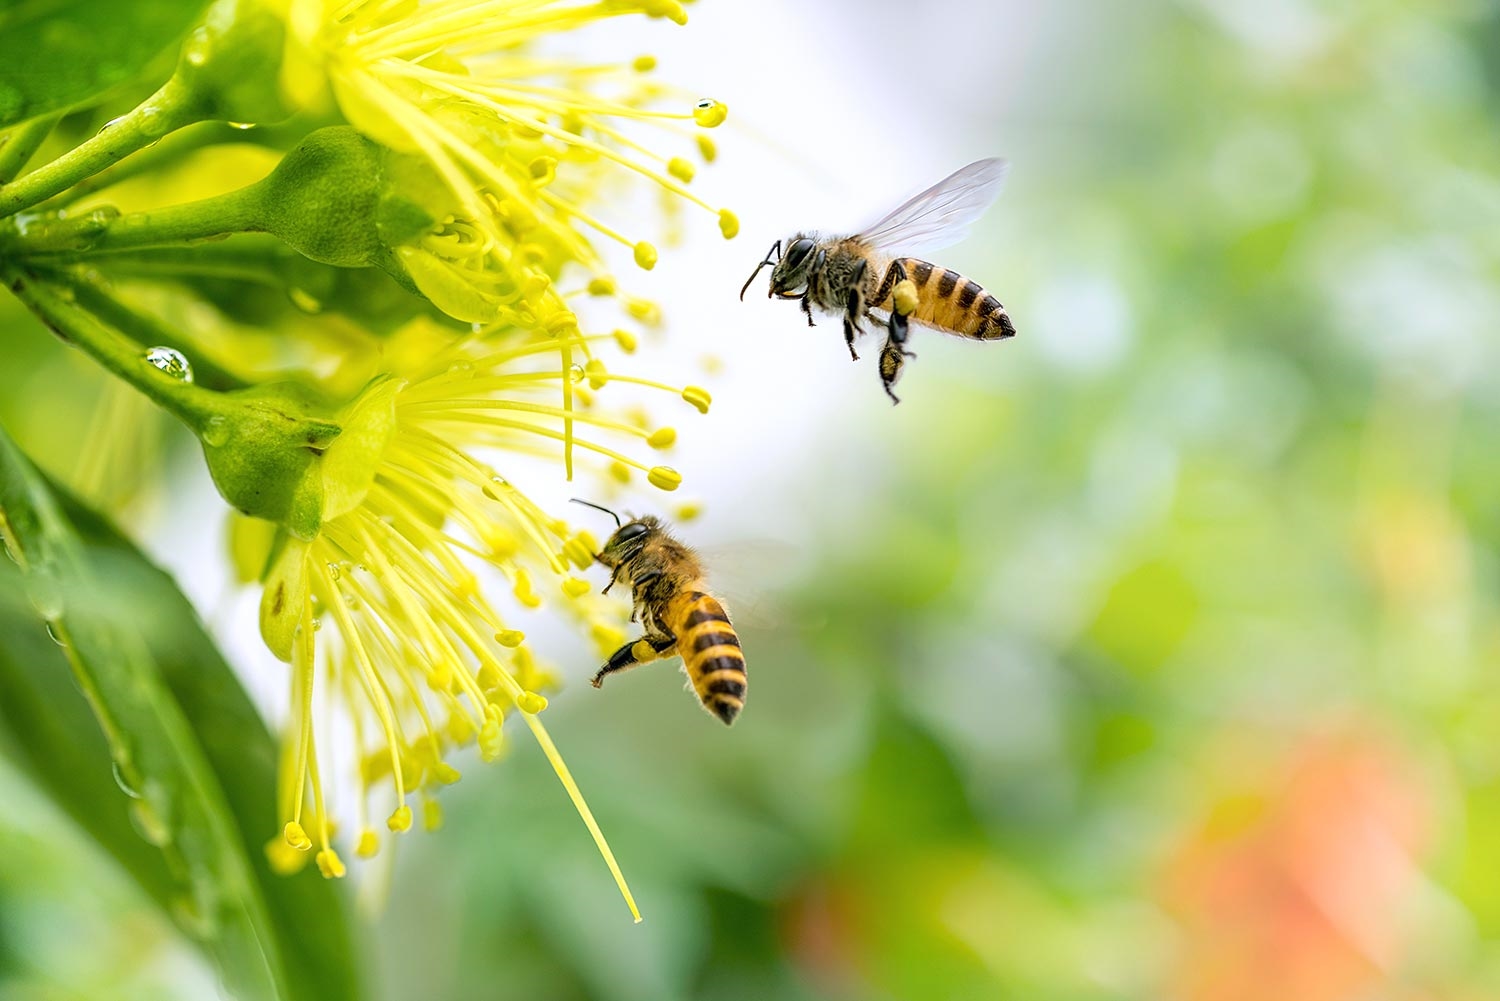 (Tổng hợp) Biện pháp nuôi ong lấy mật hiệu quả cao 1